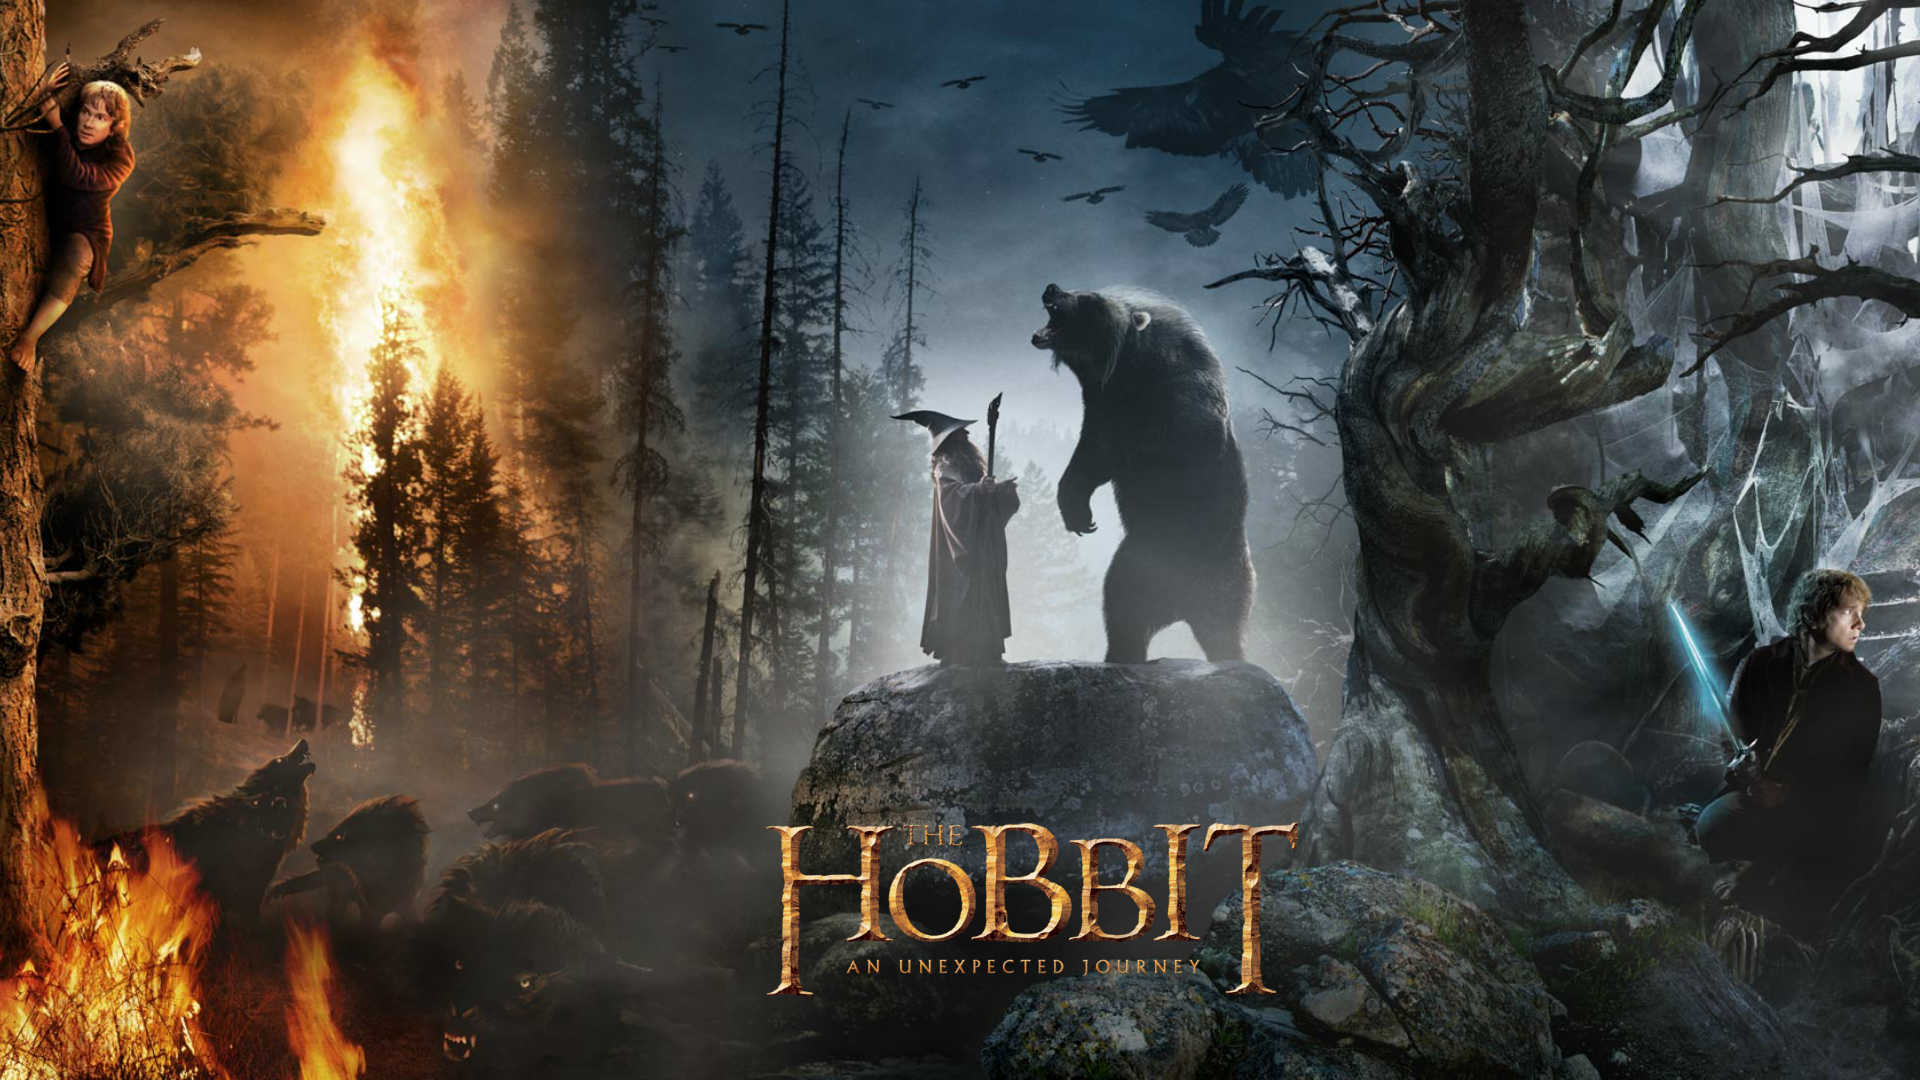 68+] The Hobbit Movie Wallpaper - WallpaperSafari